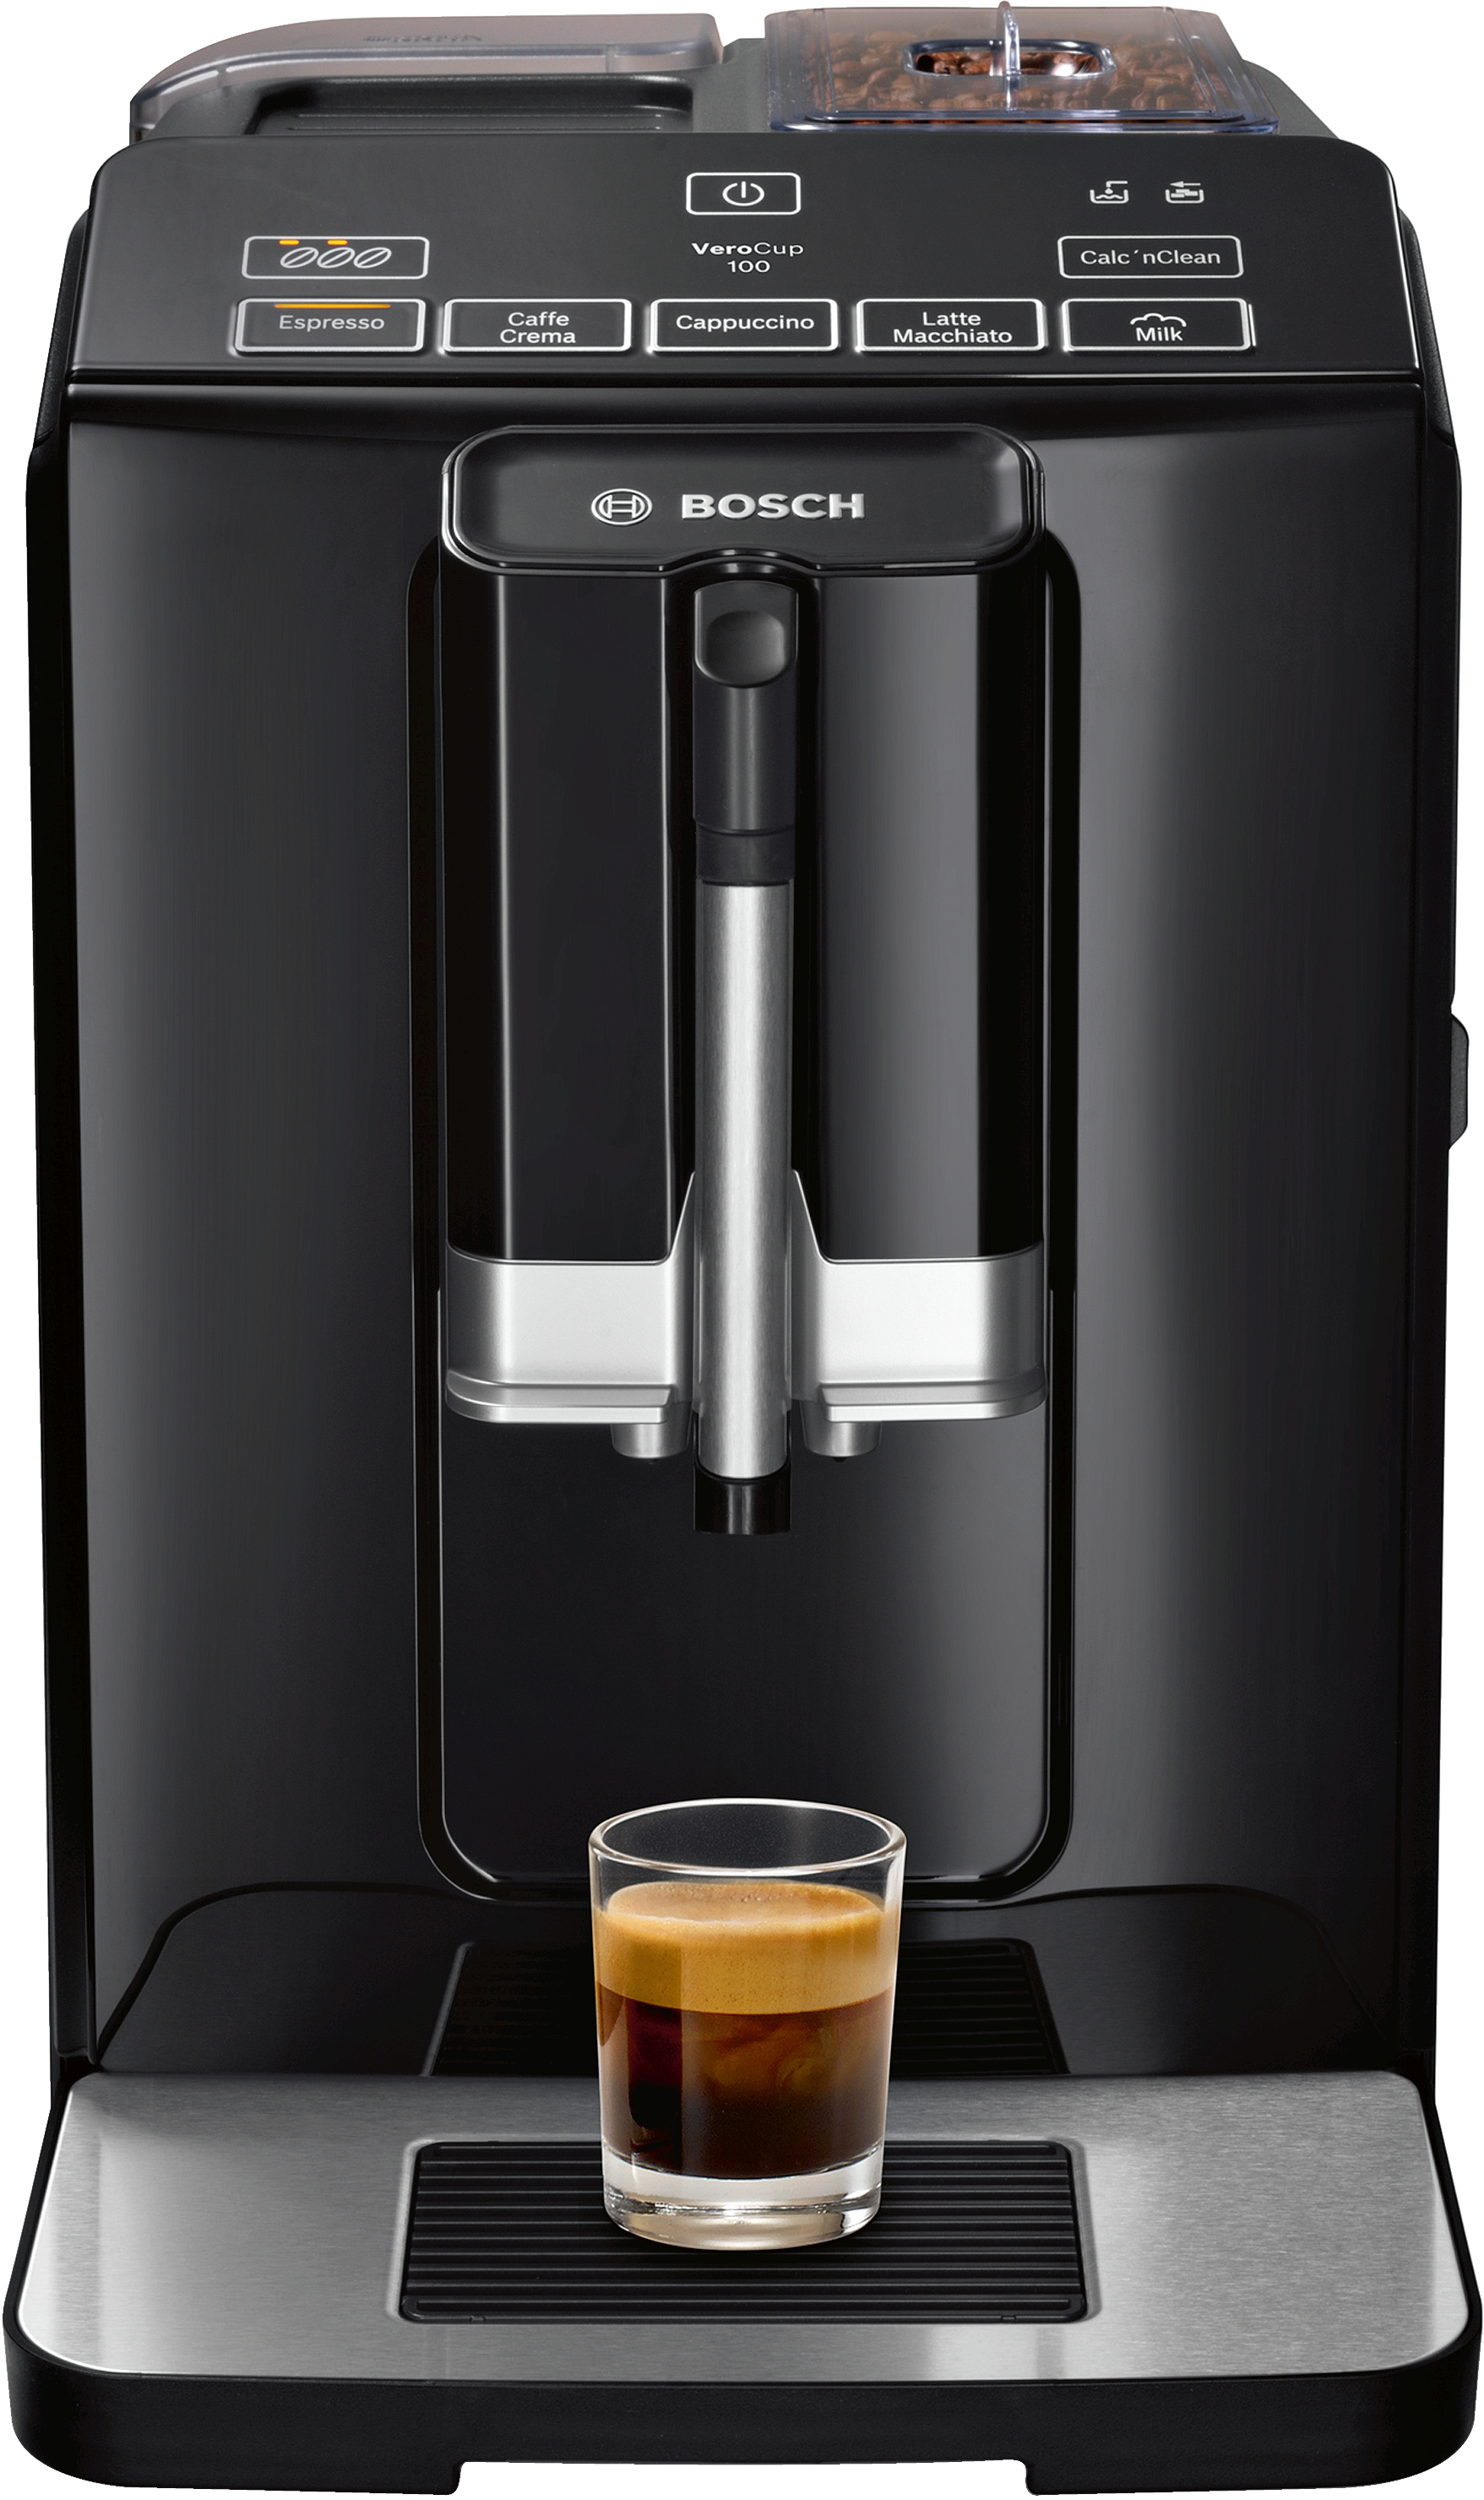 TIS30129RW Automat de cafea espresso VeroCup 100Negru 